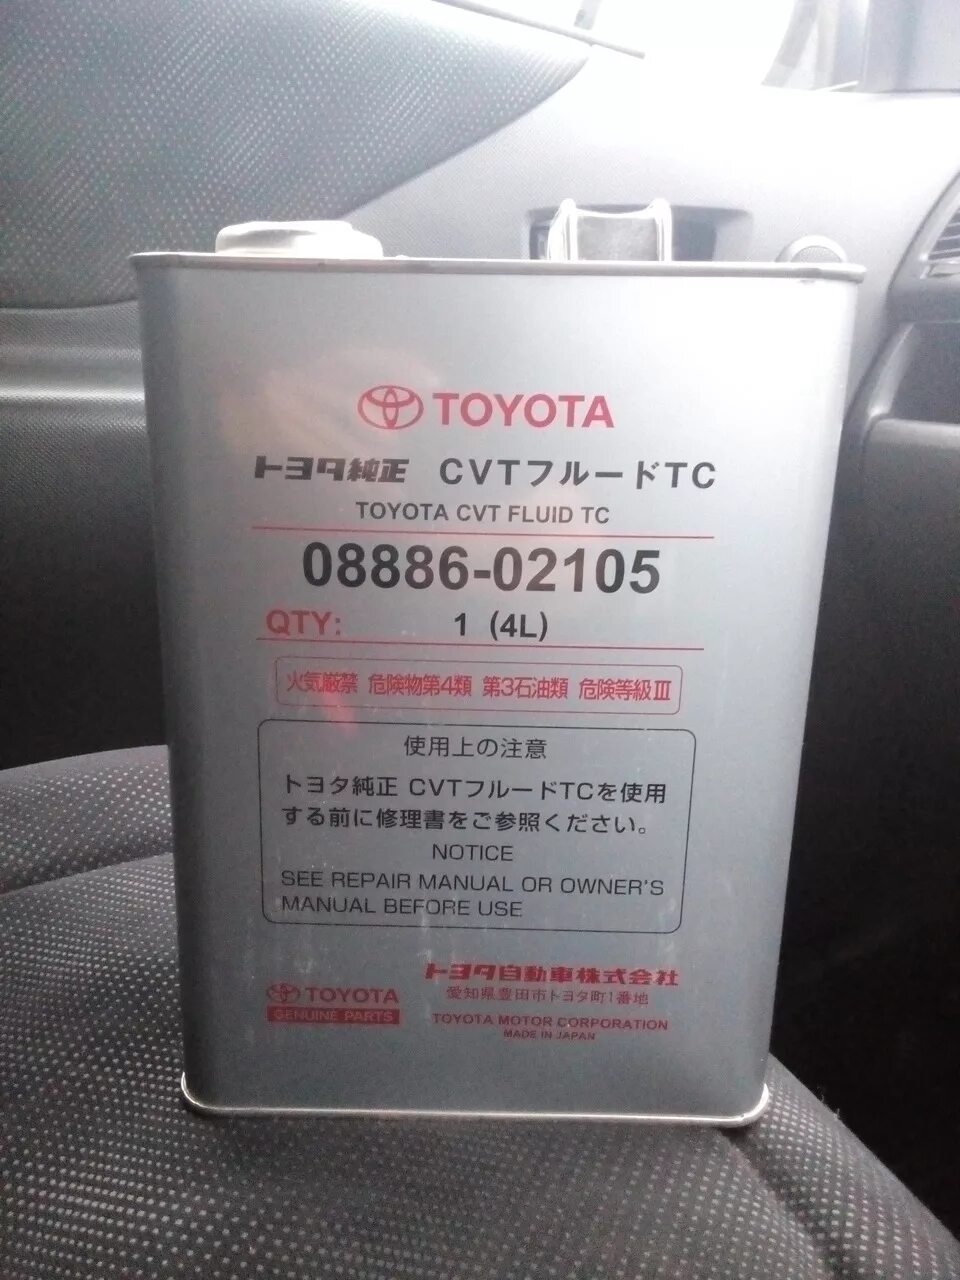 Масло в вариатор Тойота рав 4 2014 года в. Масло для вариатора Тойота Toyota Corolla 2013 артикул. Масло для вариатора Тойота рав 4 4 2018 года. Масло для вариатора Тойота рав 4.